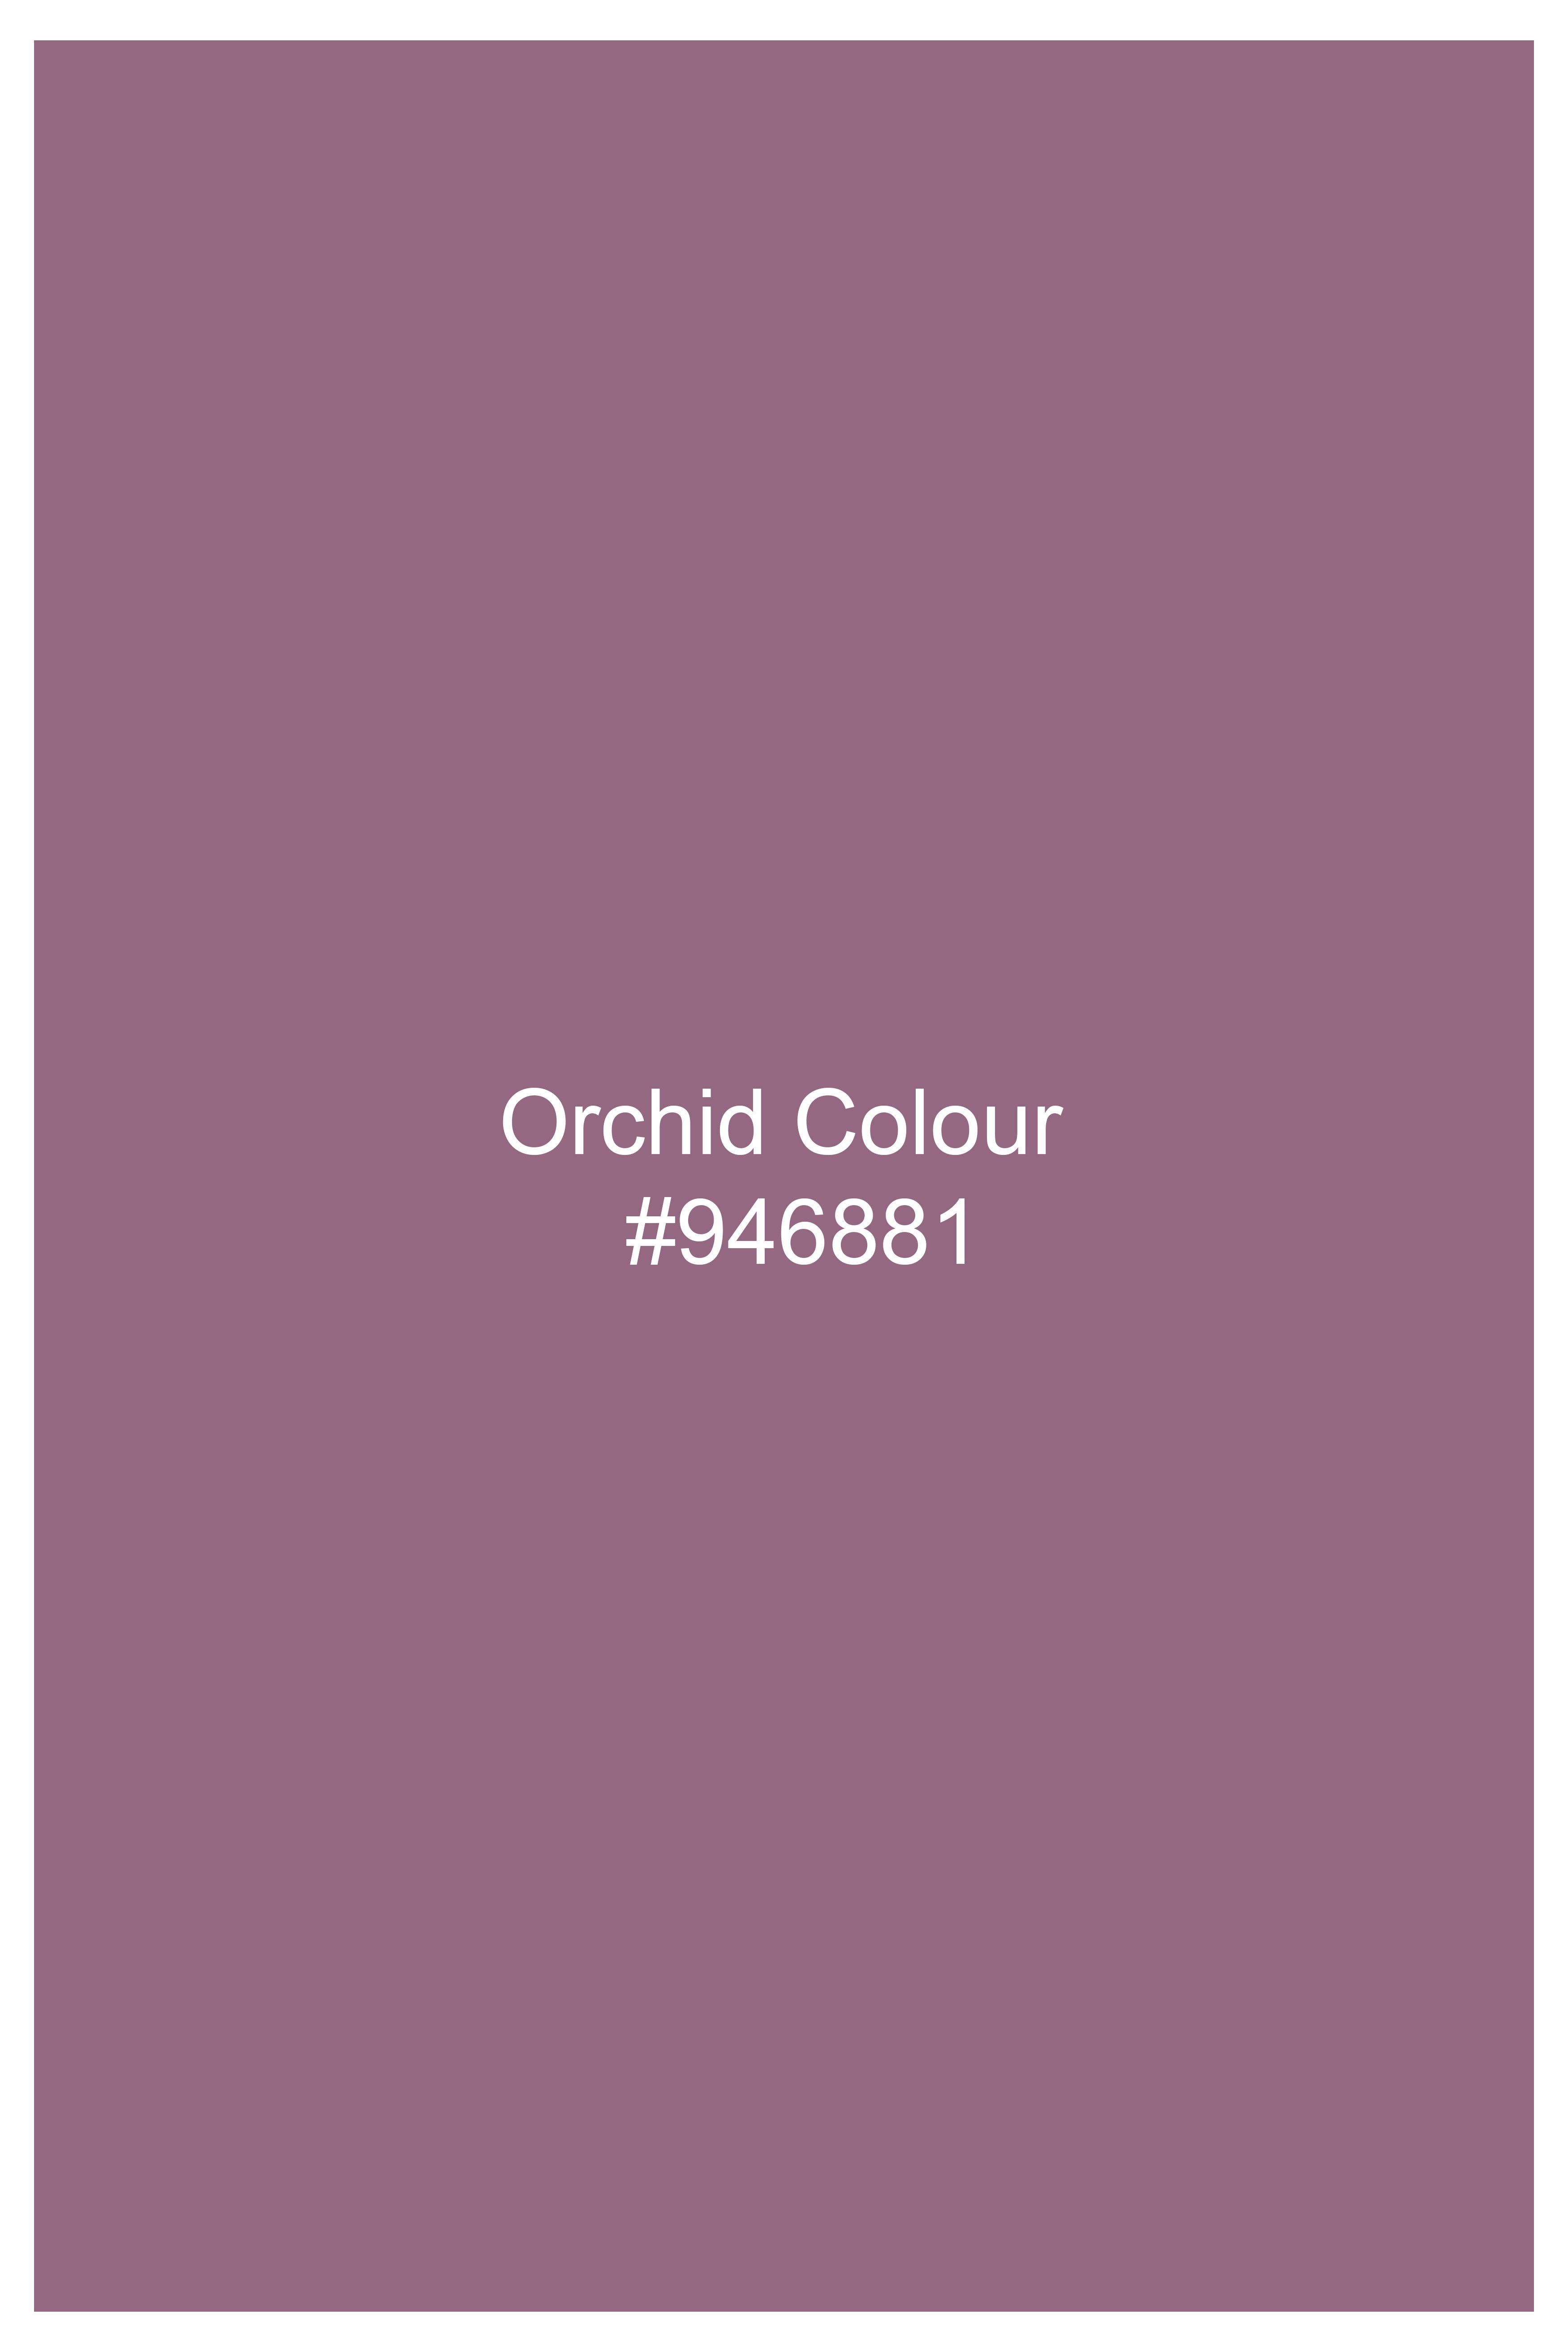 Orchid Lavender Premium Cotton Waistcoat V3071-36, V3071-38, V3071-40, V3071-42, V3071-44, V3071-46, V3071-48, V3071-50, V3071-71, V3071-54, V3071-56, V3071-58, V3071-60